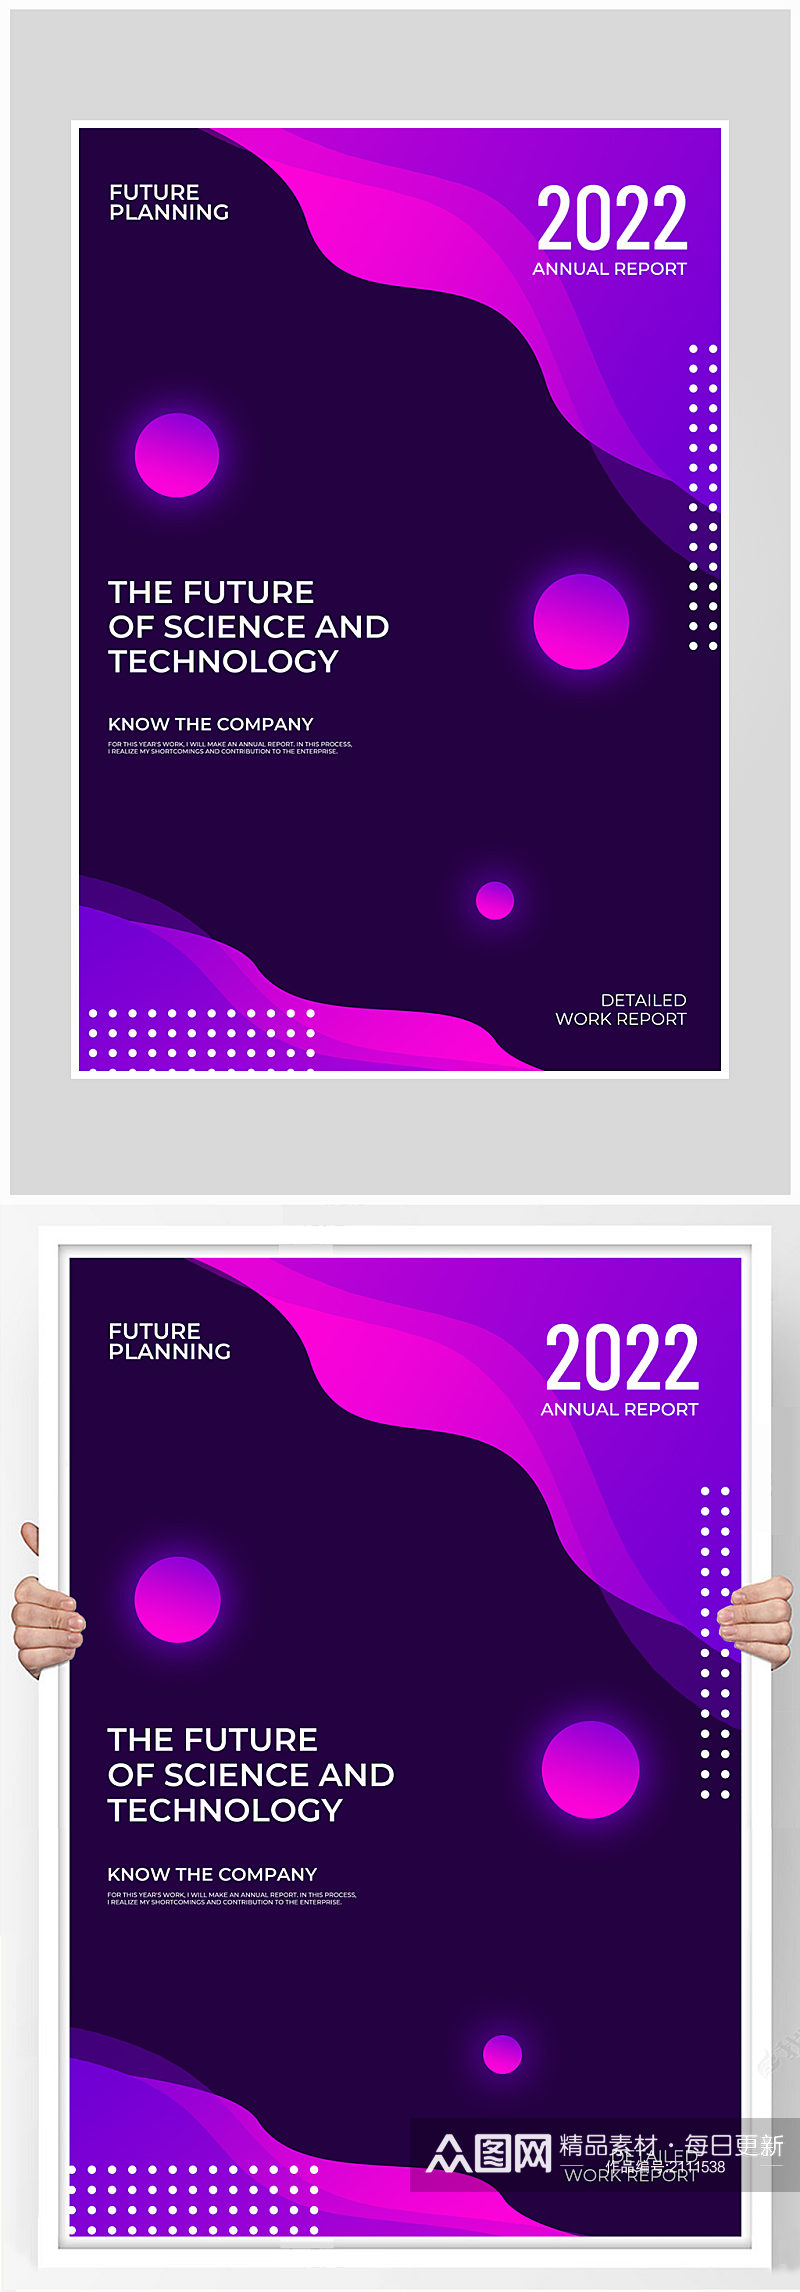 创意质感动感渐变简约2022海报设计素材